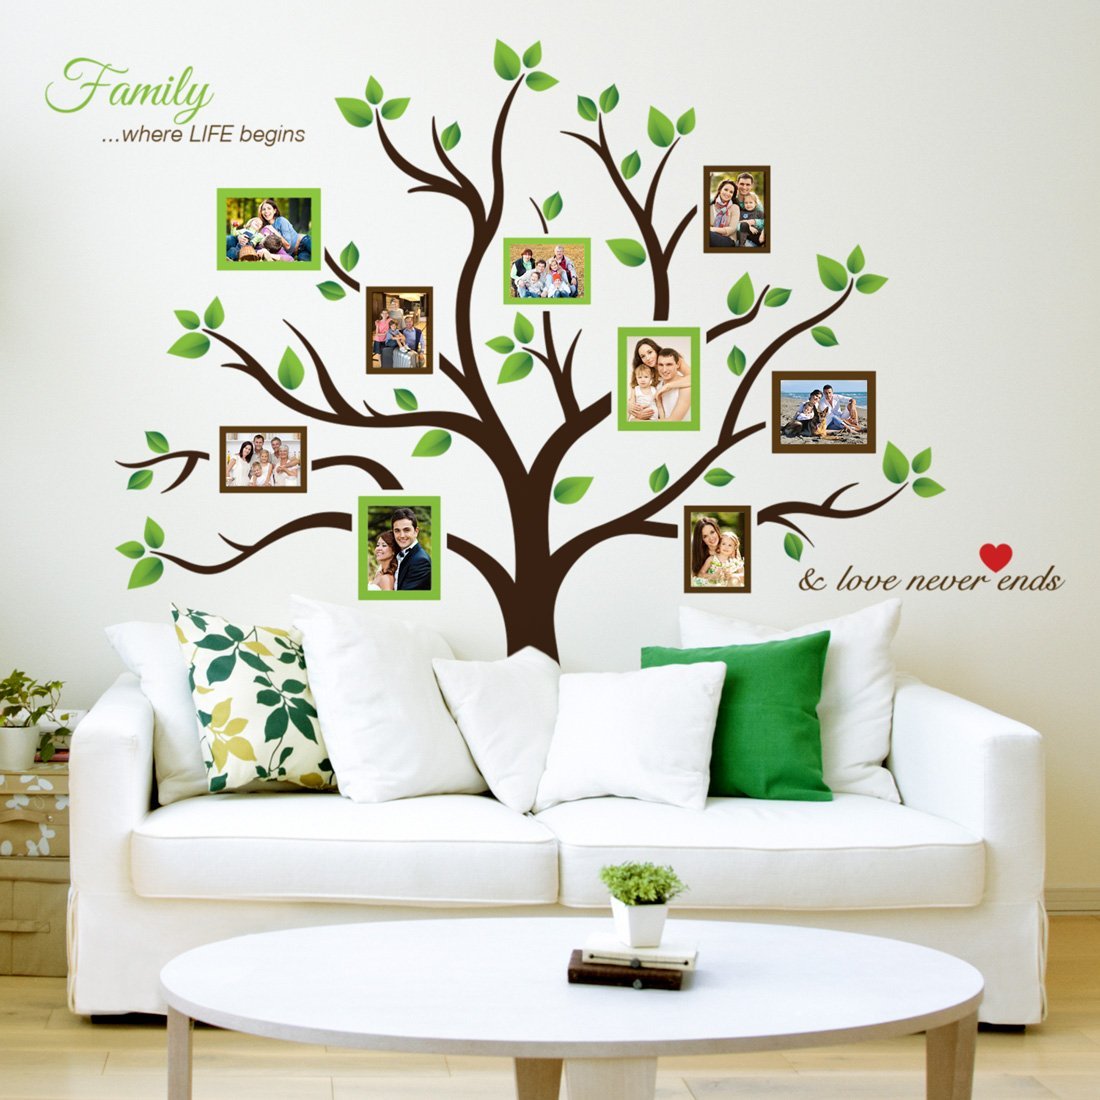 Family tree wall sticker